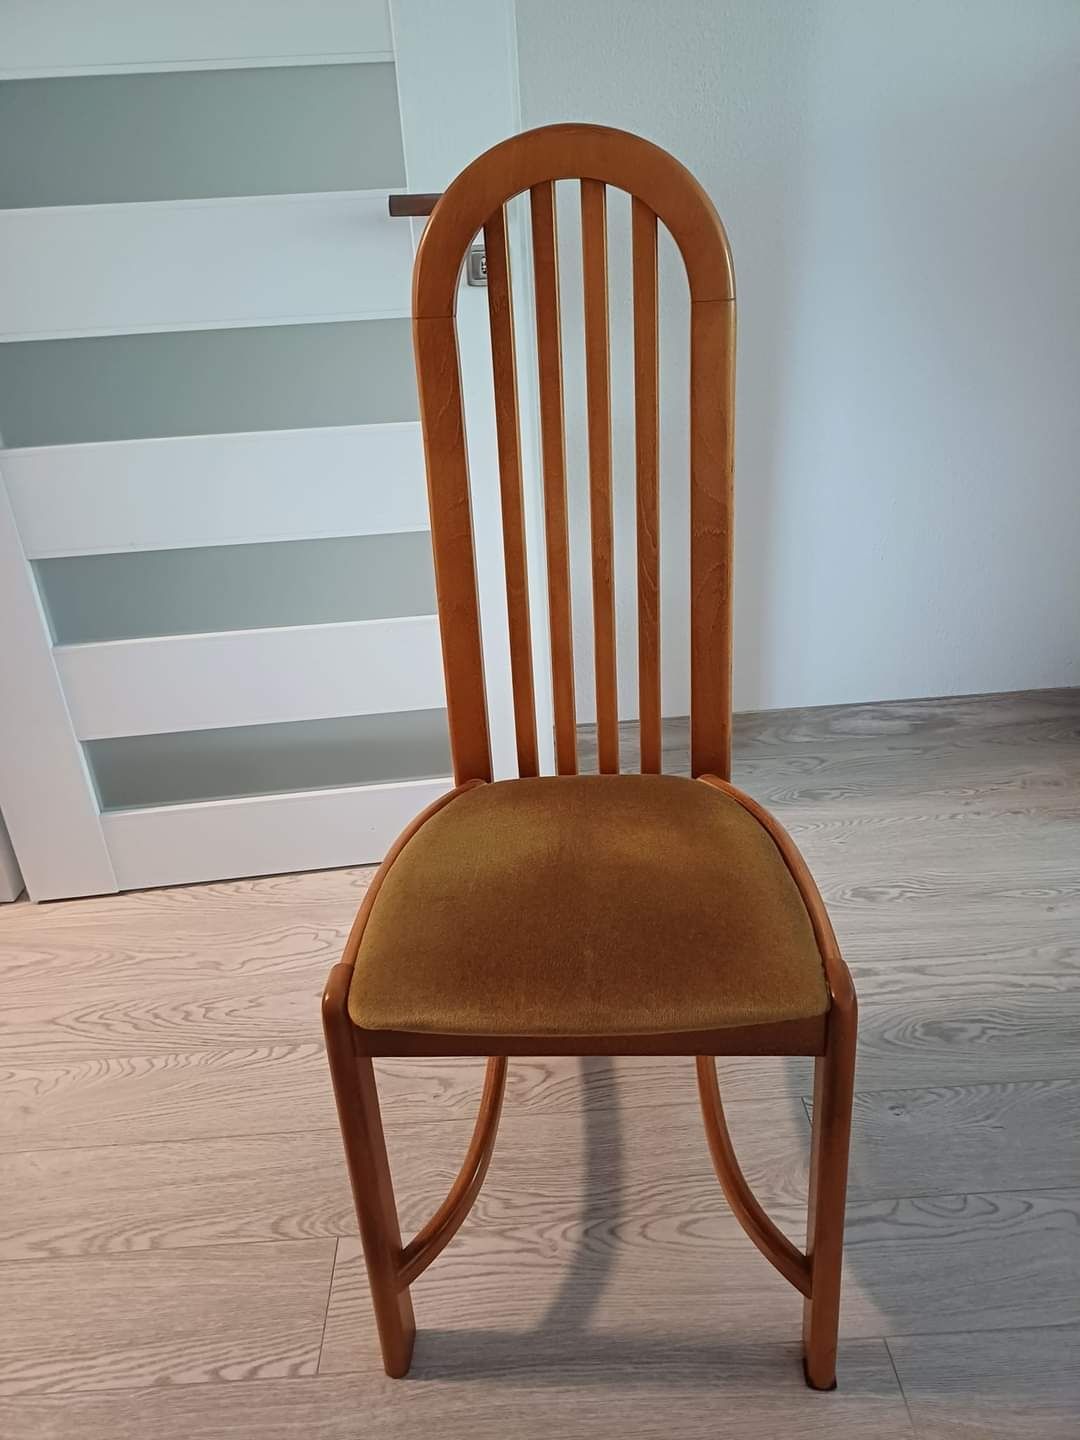 Duży stół z krzesłami